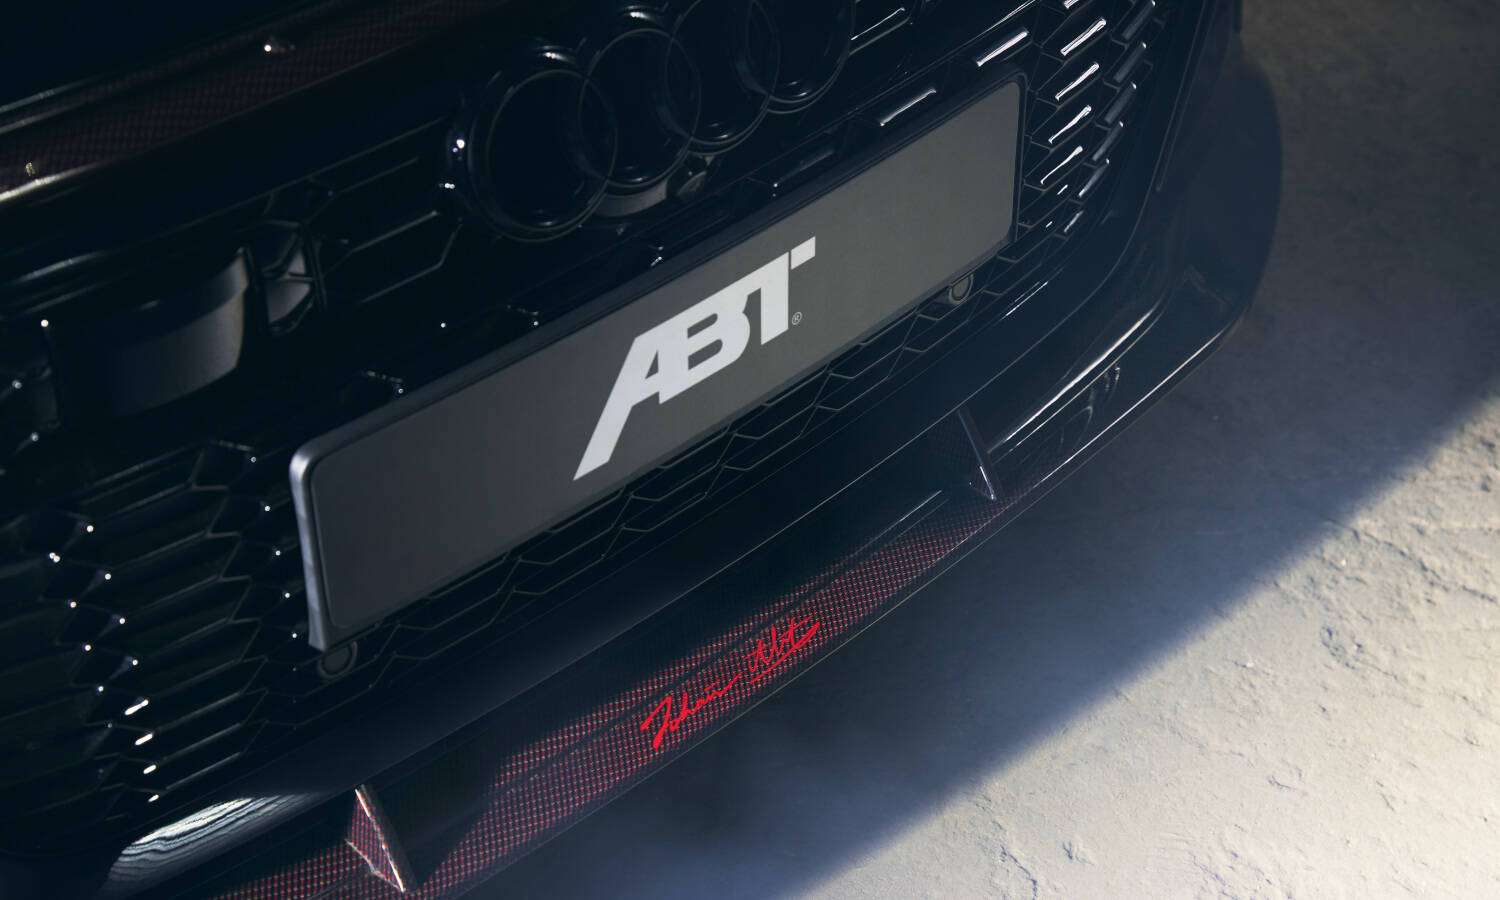  RS6 ABT Black Johann ABT Signature Edition Limited